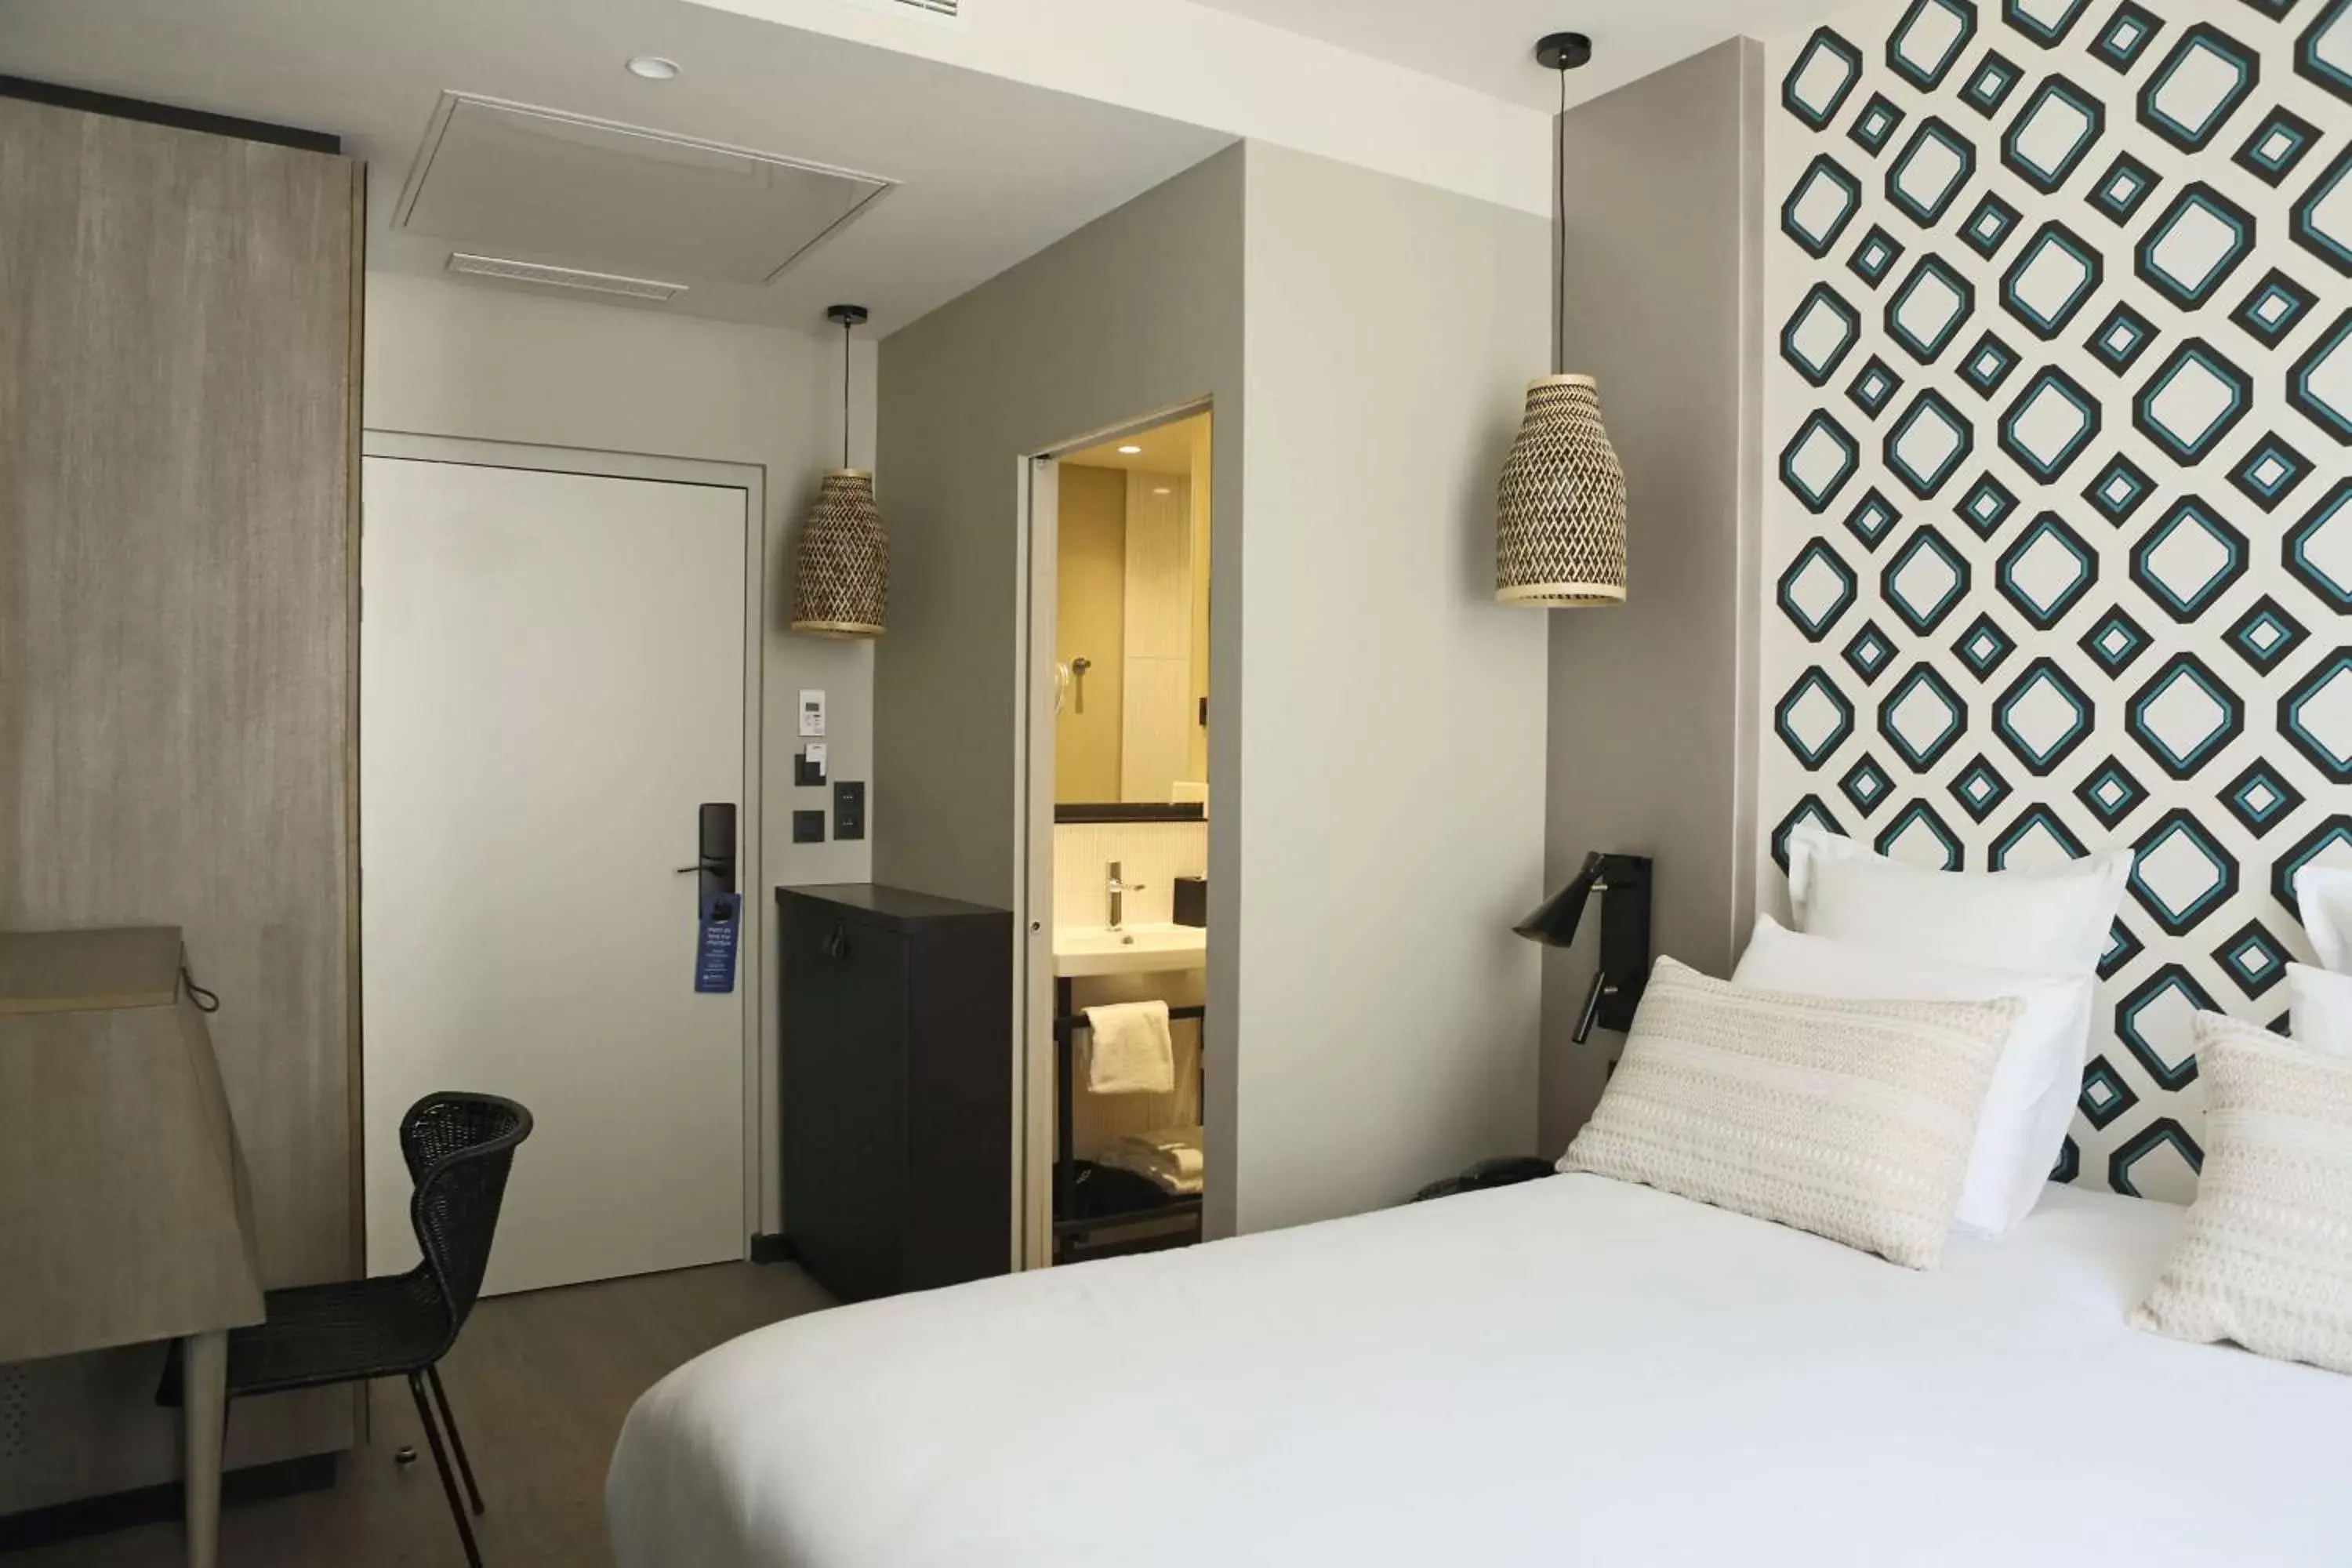 Photo of the whole room, Bed in Best Western Plus Hôtel La Joliette